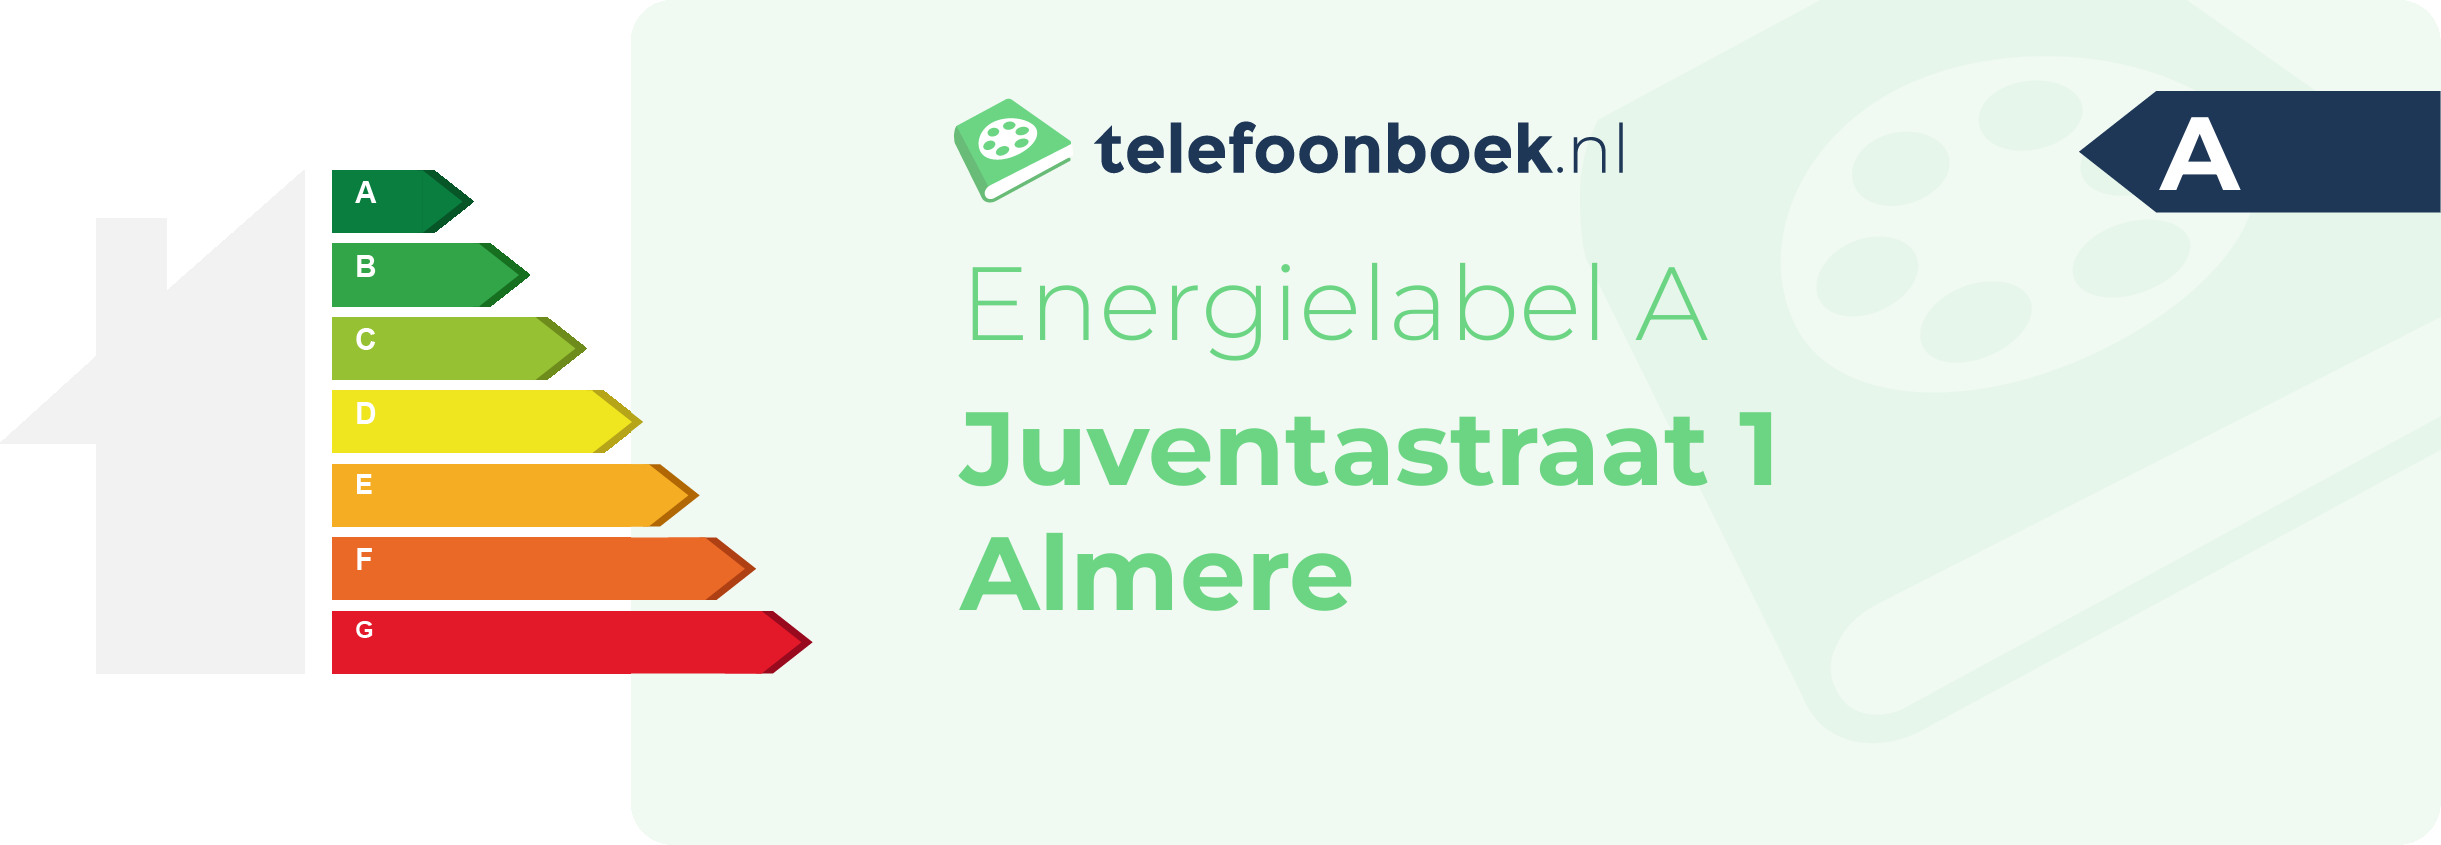 Energielabel Juventastraat 1 Almere